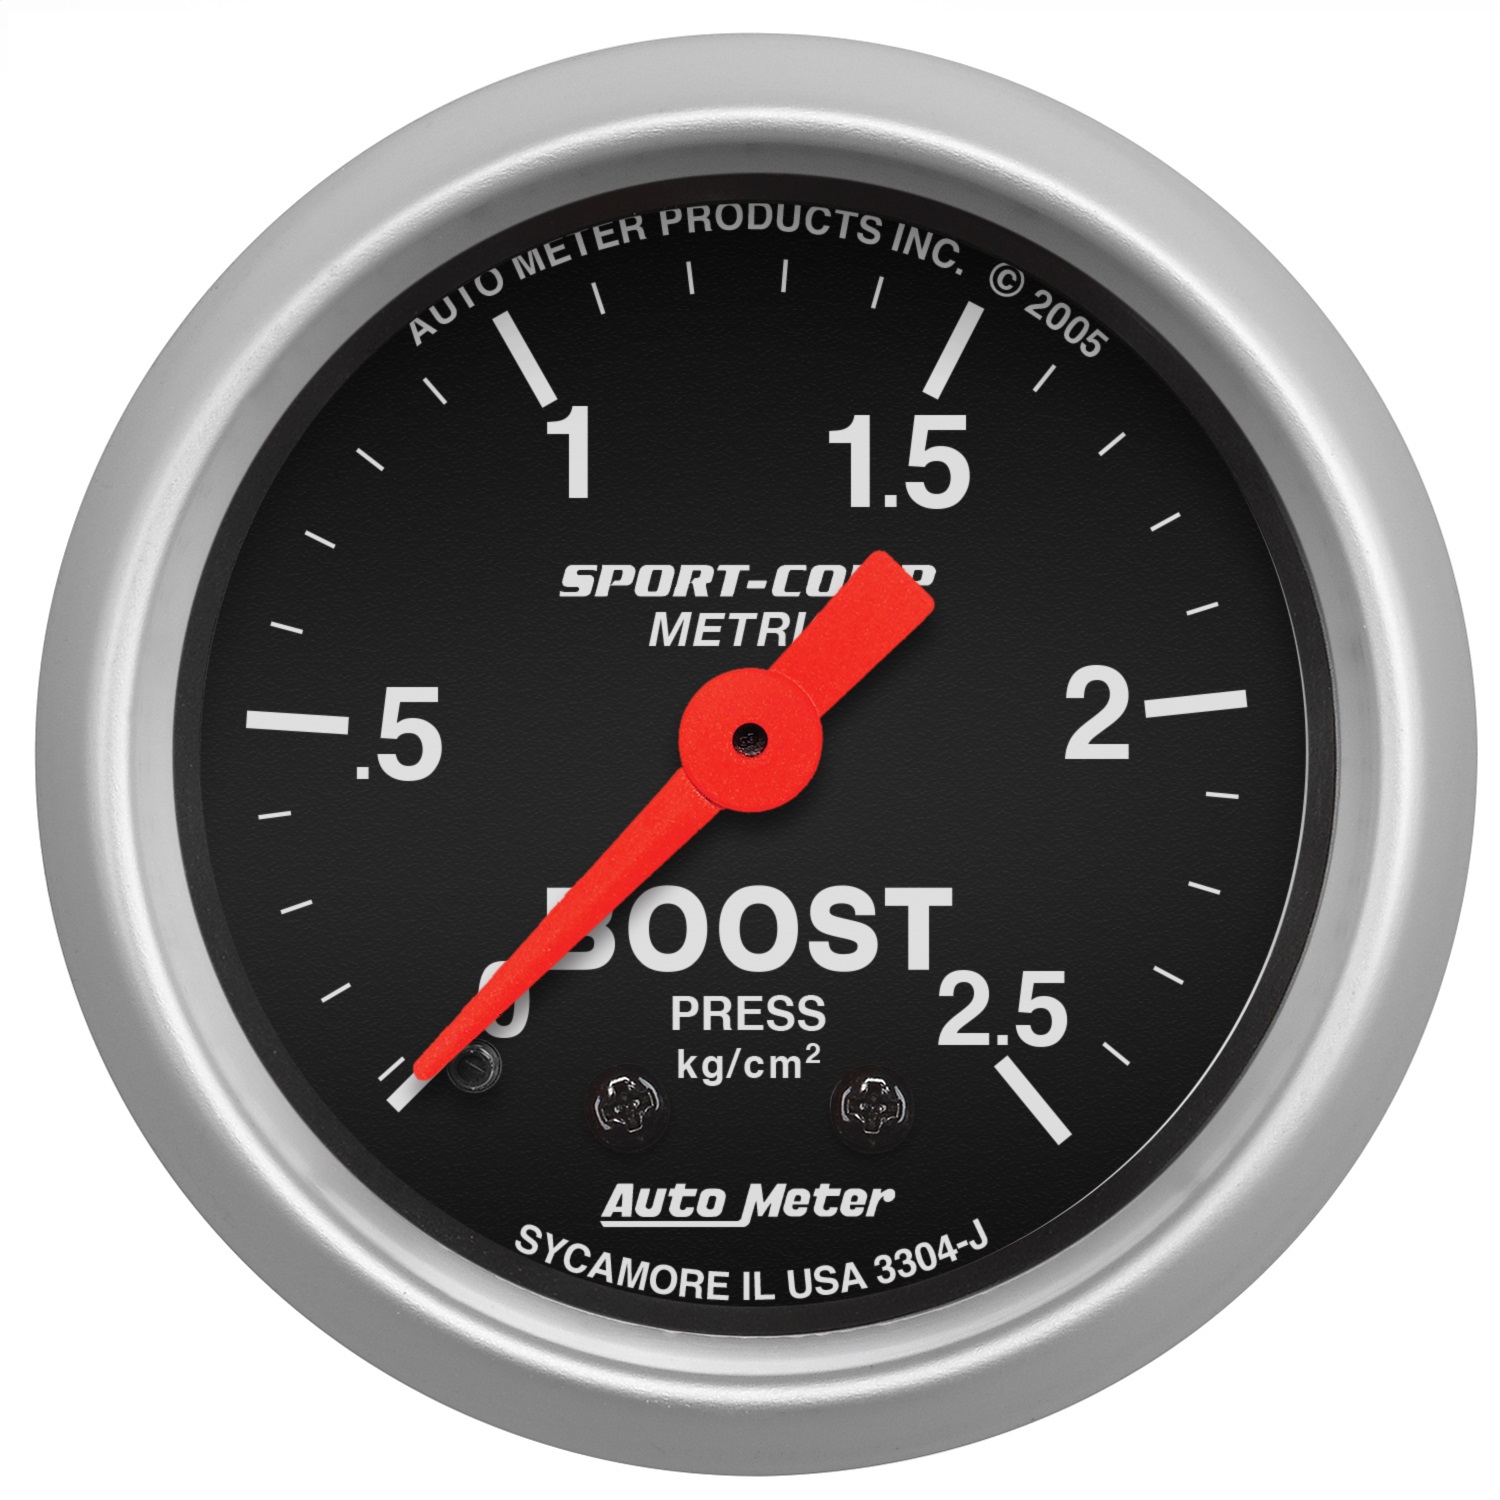 Auto Meter Auto Meter 3304-J Sport-Comp; Mechanical Metric Boost Gauge